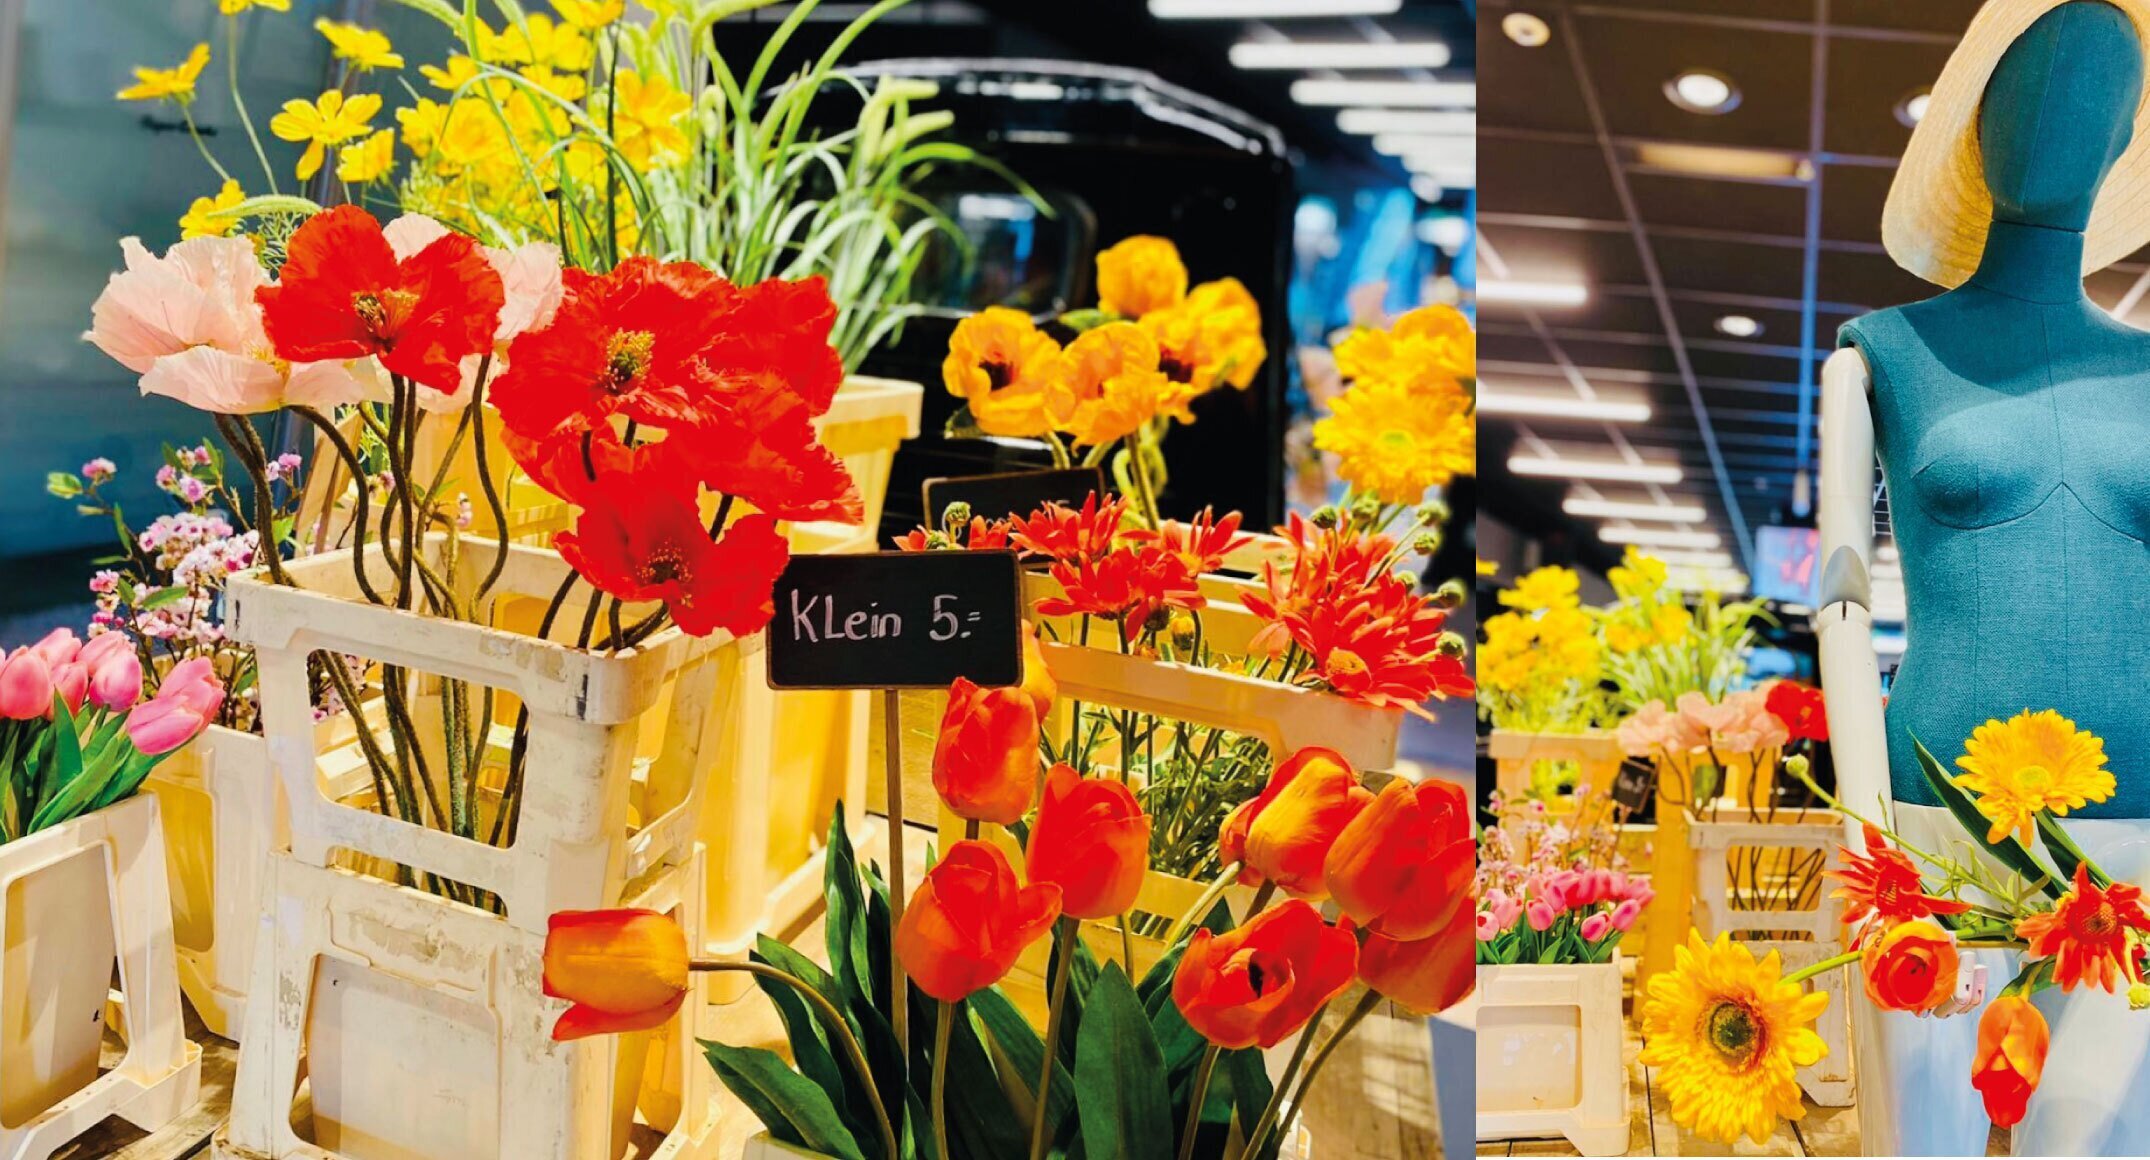 CAST start op 16 augustus nieuwe seizoen: ‘Flower en garden markets’ tonen duurzaam denken